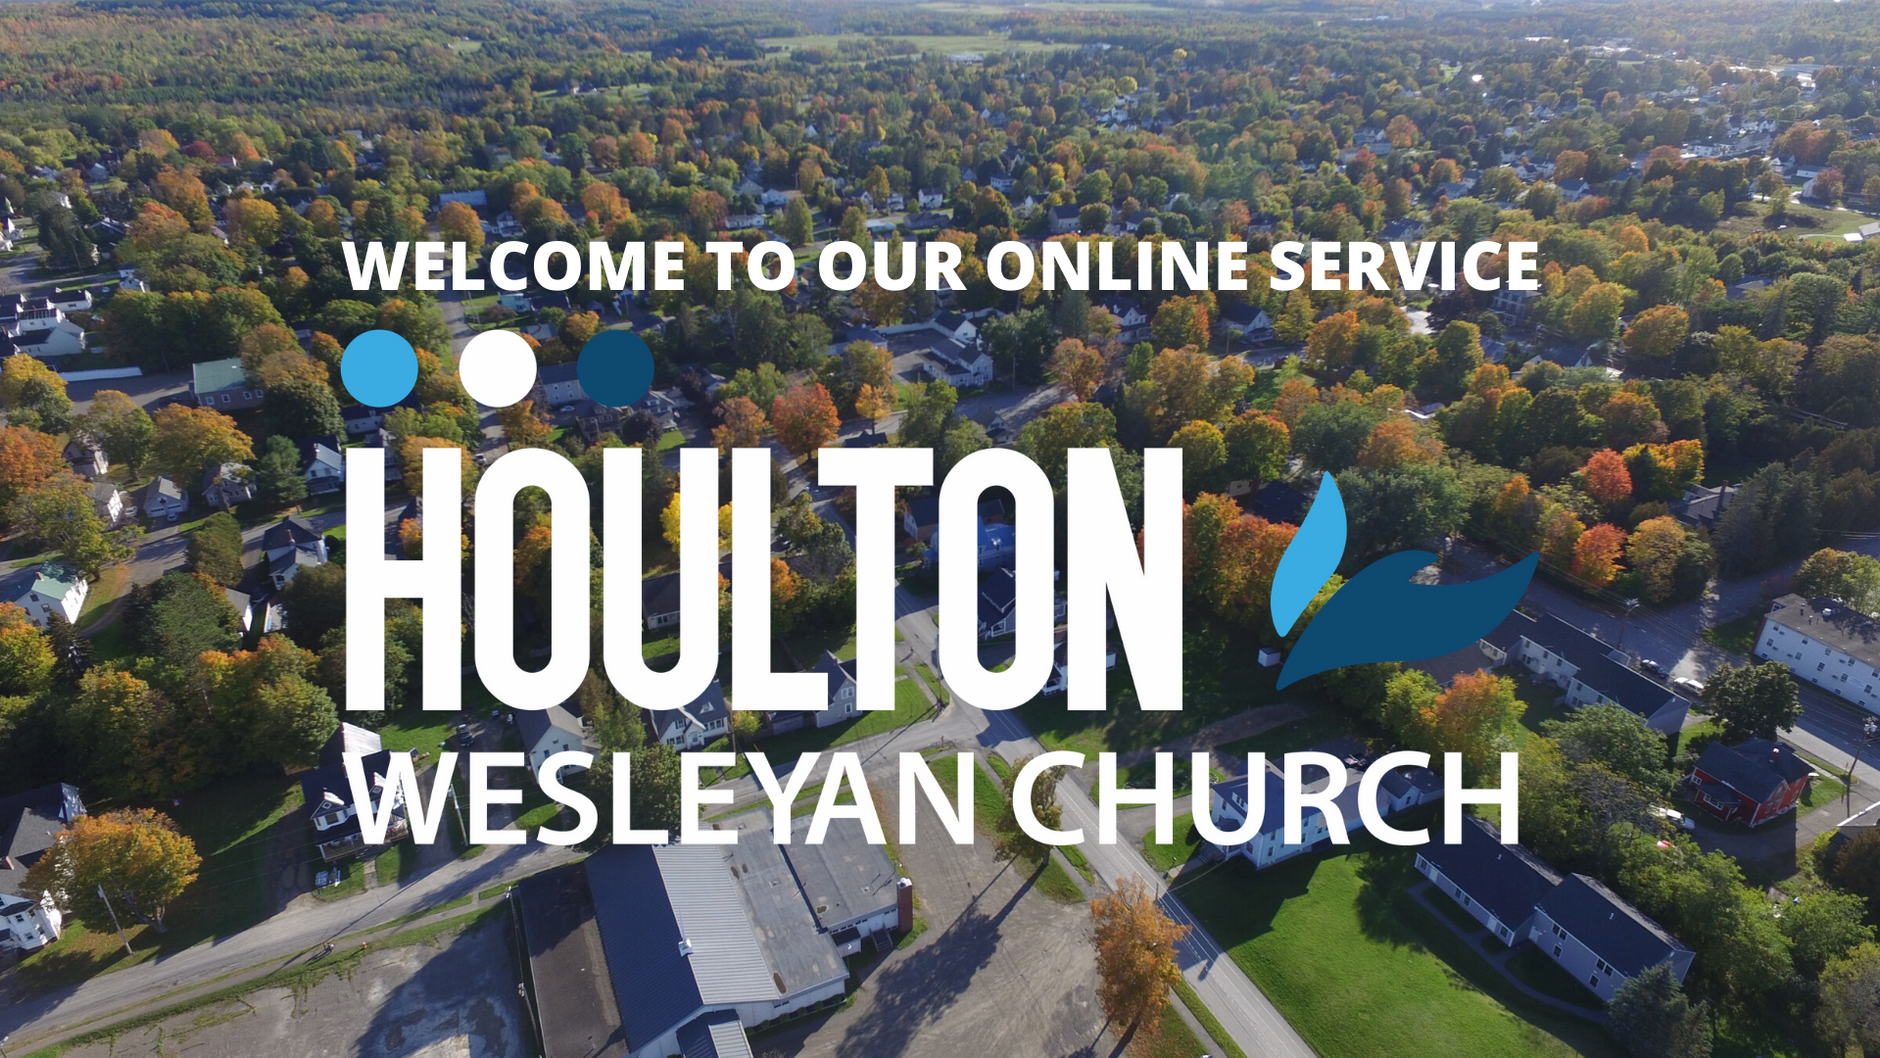 Houlton Wesleyan Church